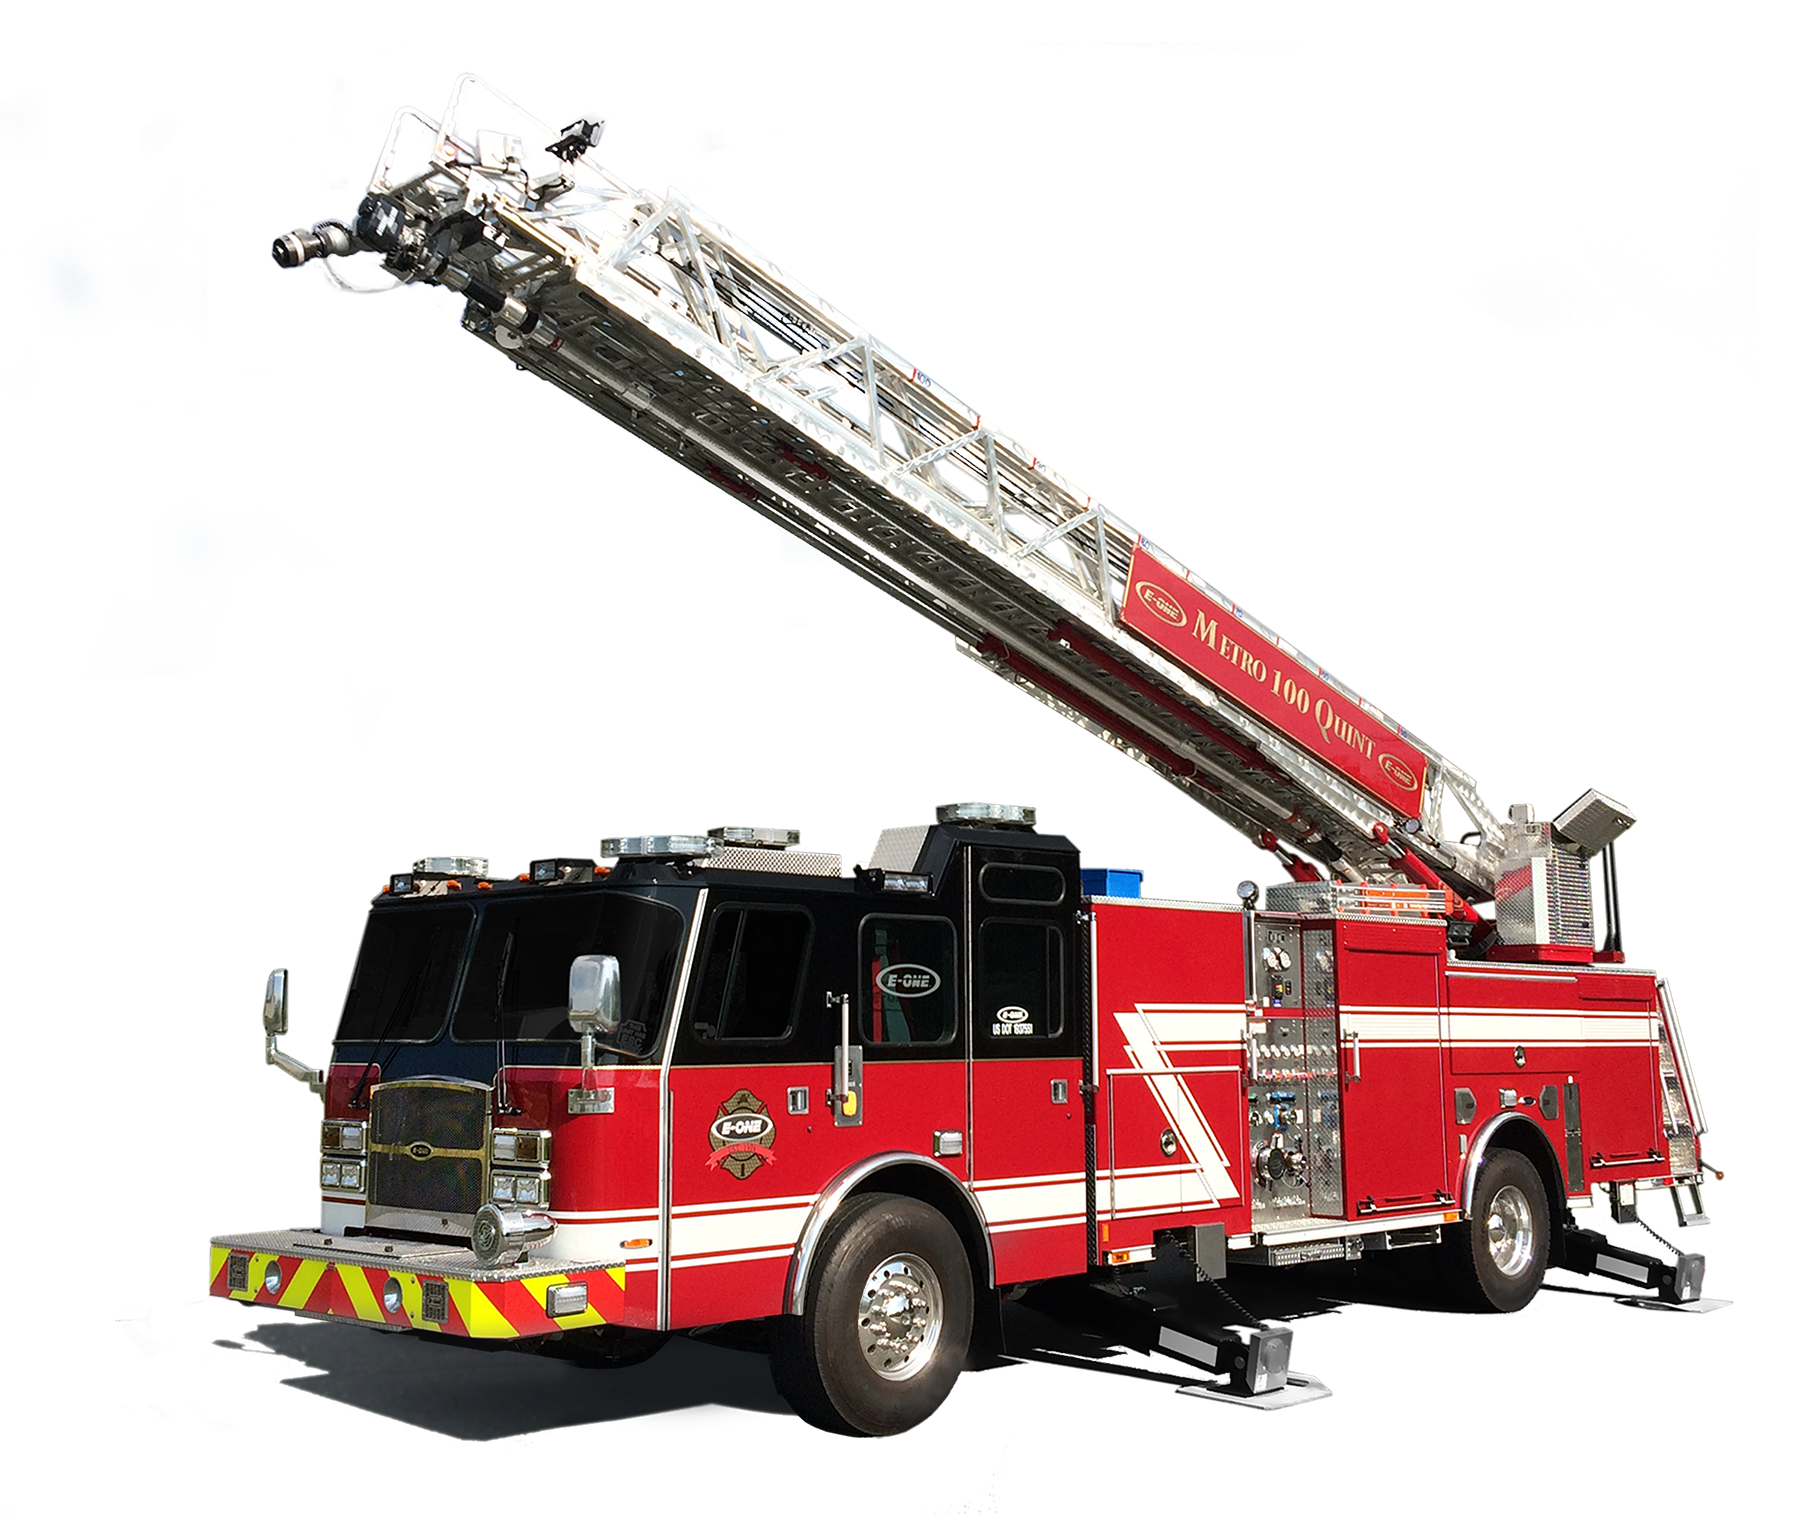 Машина "Fire Truck" пожарная, 49450. Пожарные машины Fire Ladder Truck. Gear Fire transparent fs238-5a пожарная машина. Пожарный автомобиль с лестницей.